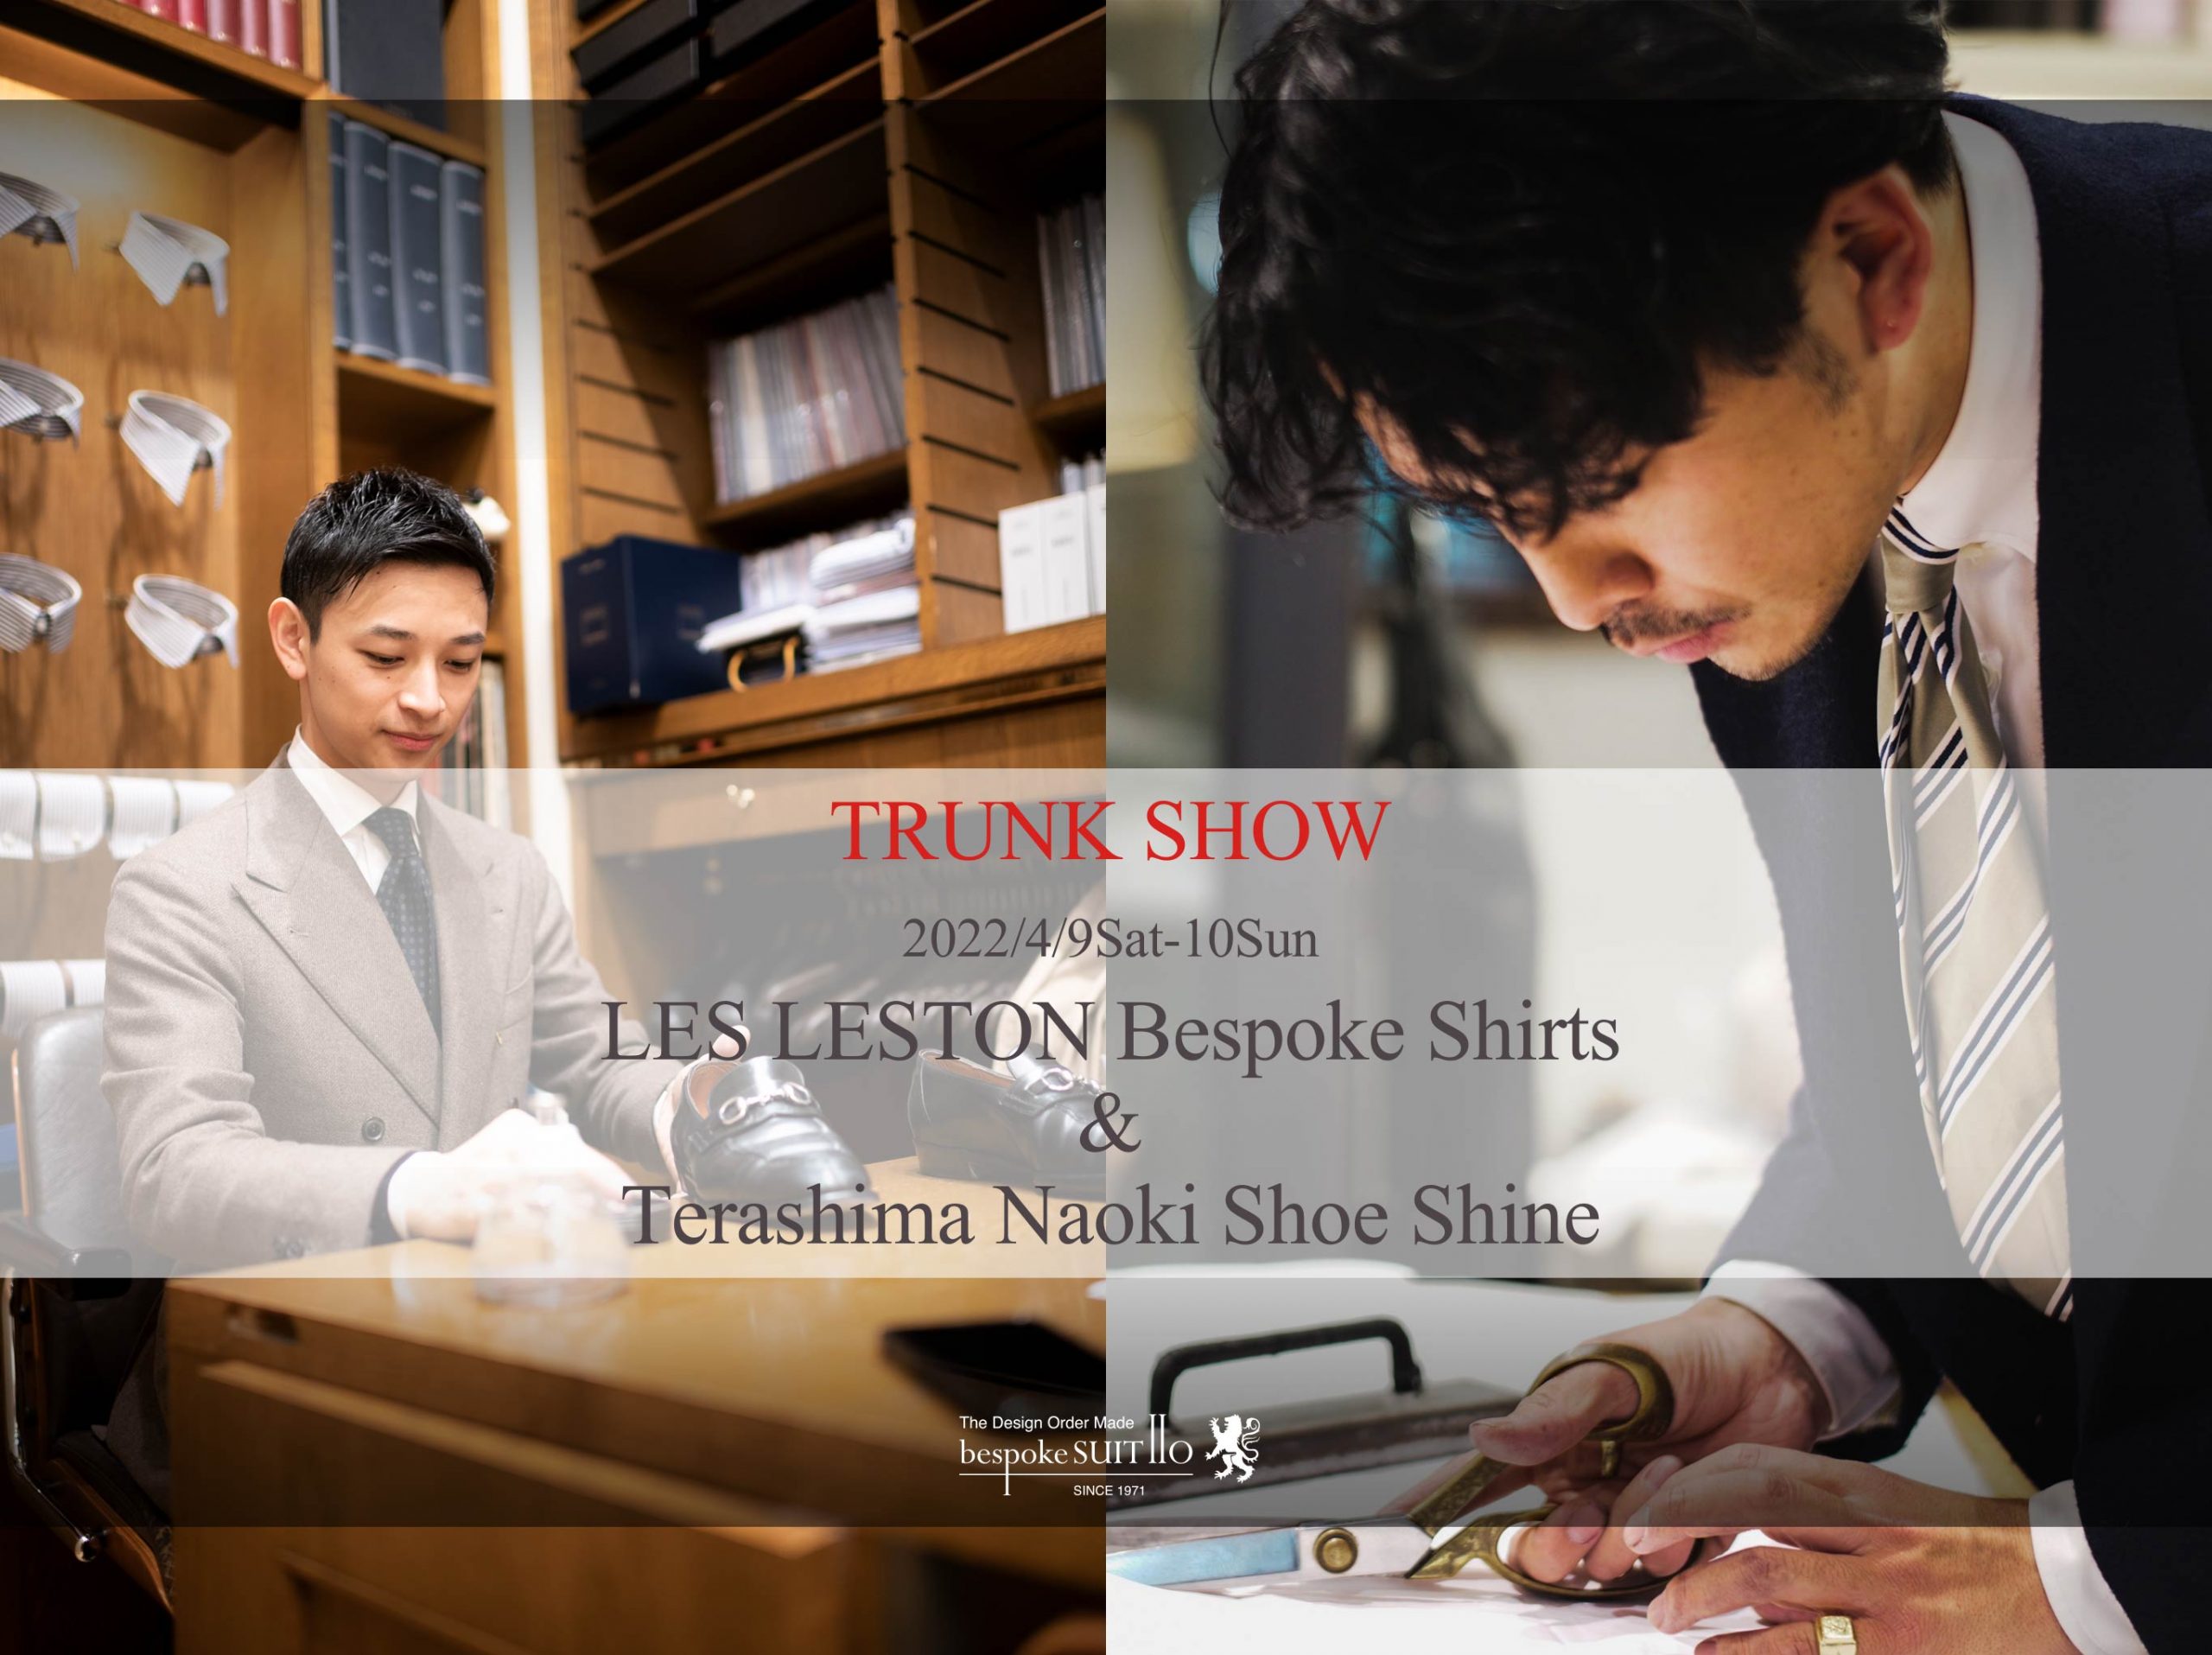 ES LESTON Pattern Order Shirts & Terashima Naoki Shoeshine 令和4年4月9日(土)と10日(日)の２日間 シャツオーダー会と靴磨き会を同時開催いたします。 　　　 レスレストンの久木元氏による採寸はオーダー会限定となります。 オーダー会開催中は特別に、 パターンオーダーのレベルを超えた体型補正やデザイン変更が可能です。 今回のオーダー会に向けて生地も豊富に揃えましたので是非ご覧下さいませ。 　　　 寺島氏の靴磨き会は、3度目の開催となります。 仕上がりの綺麗さだけではなく、 ついつい見入ってしまう程の技術の高さと無駄のない動きには感心致しました。 日本一に輝いた磨きを是非ご覧下さいませ。（靴磨きはお預かりも可能です。） 　 皆様のご来店を心よりお待ちしております。　